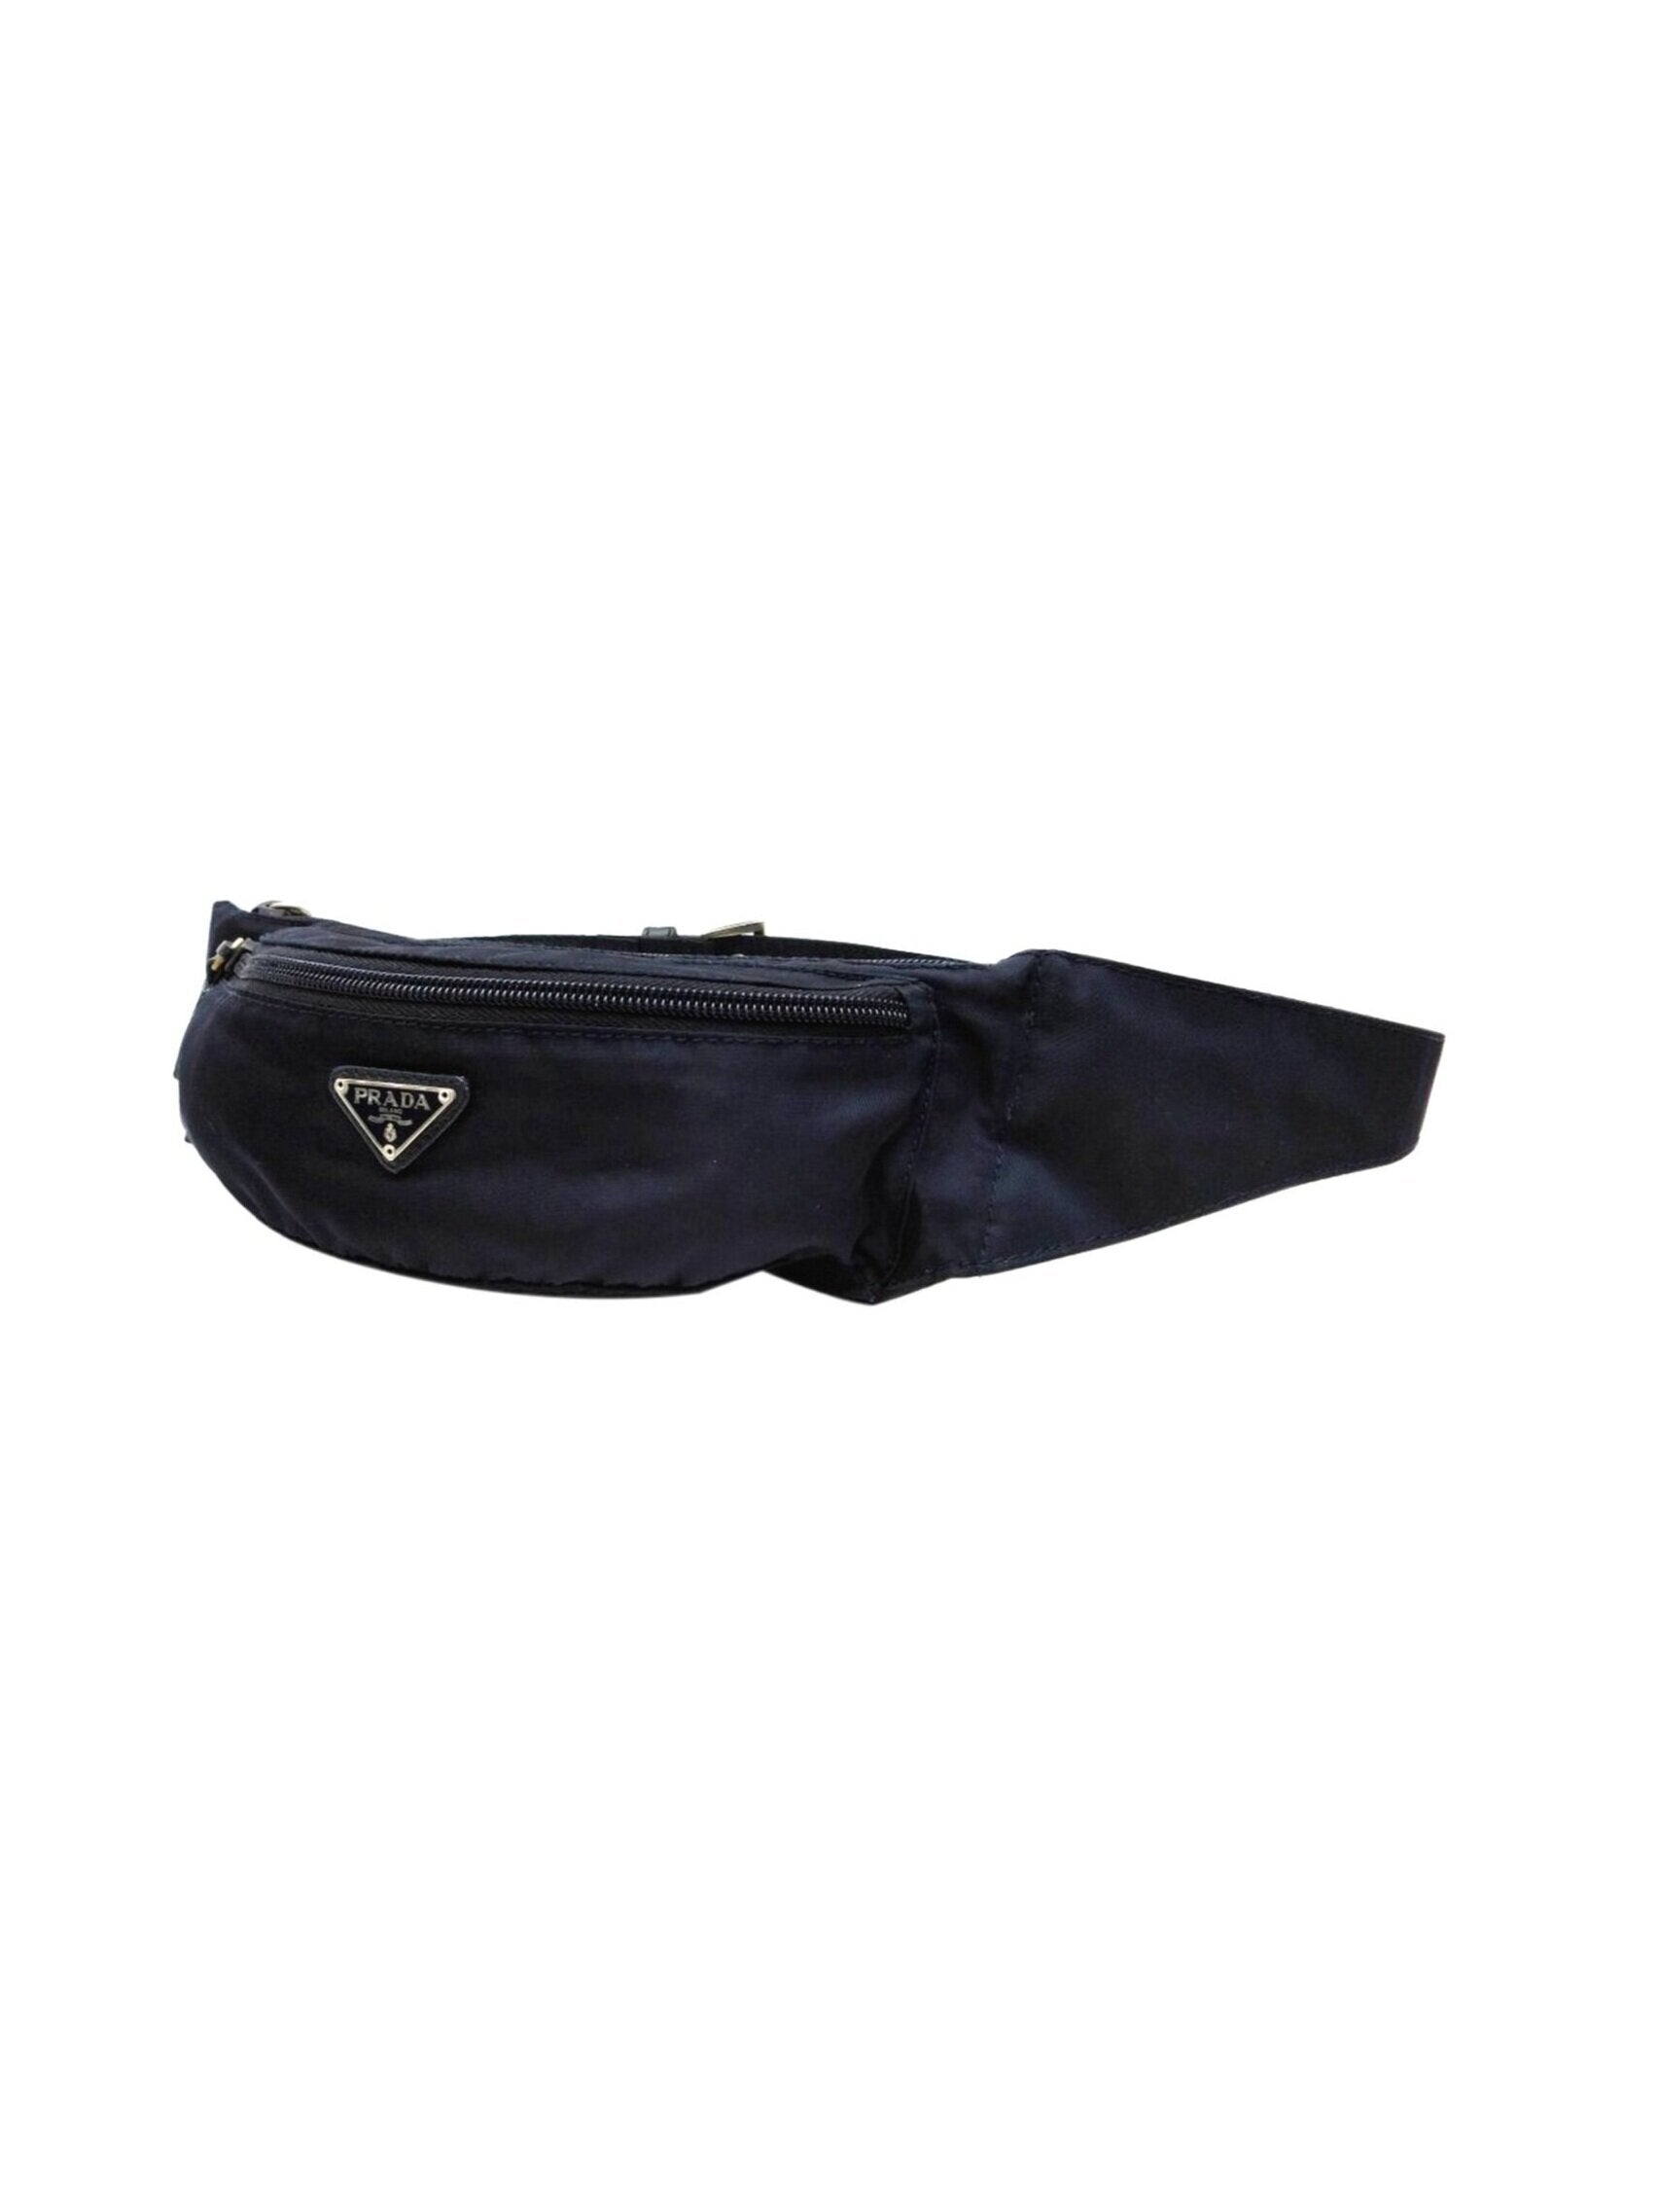 Prada 2000s Black Nylon Mini Waist Bag